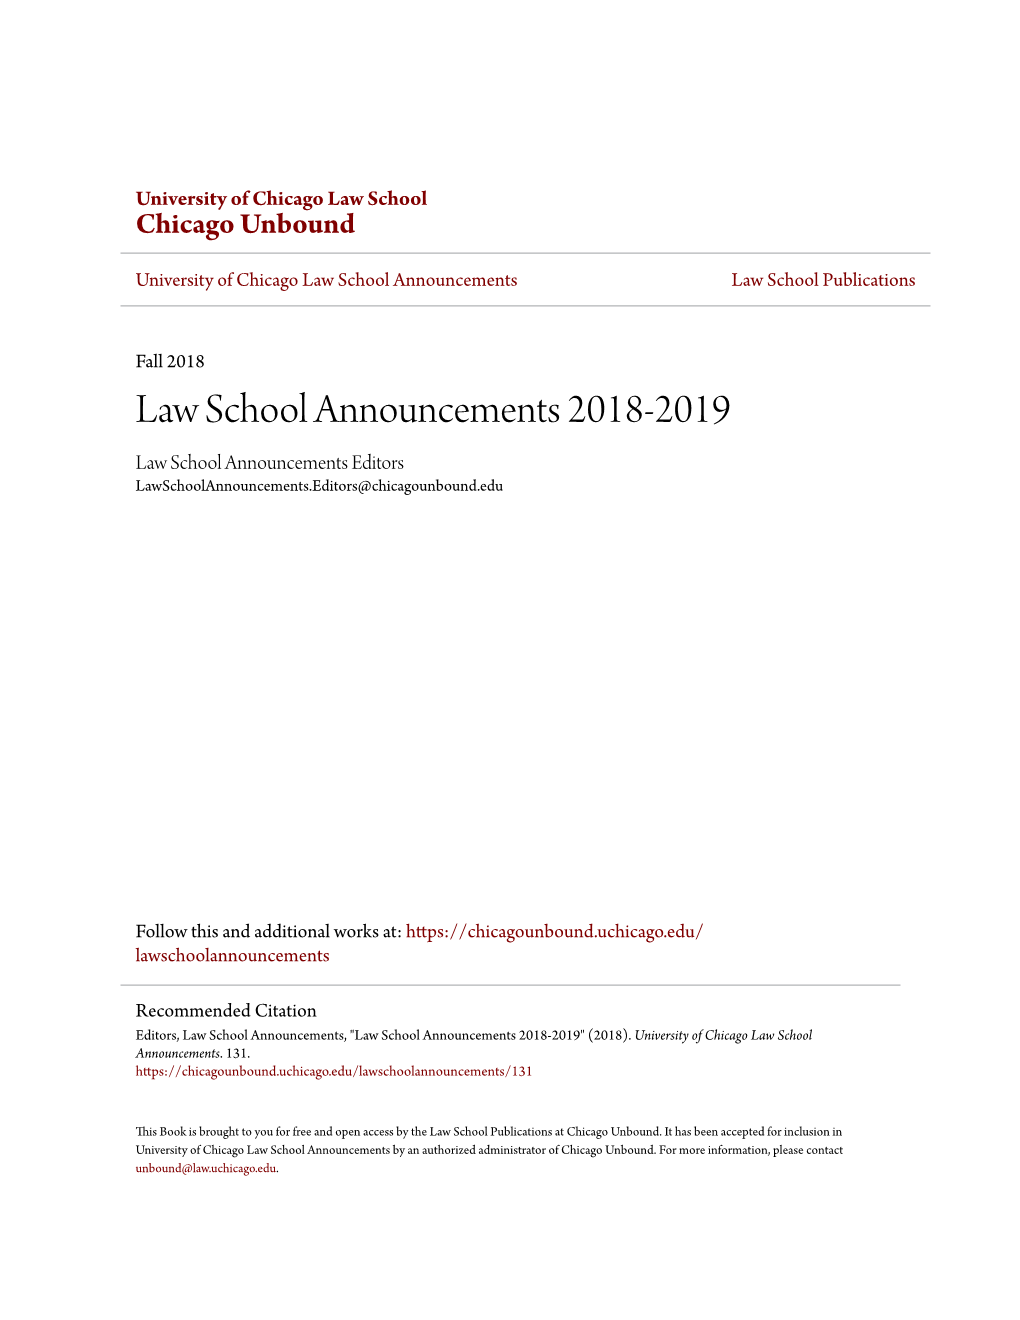 Law School Announcements 2018-2019 Law School Announcements Editors Lawschoolannouncements.Editors@Chicagounbound.Edu